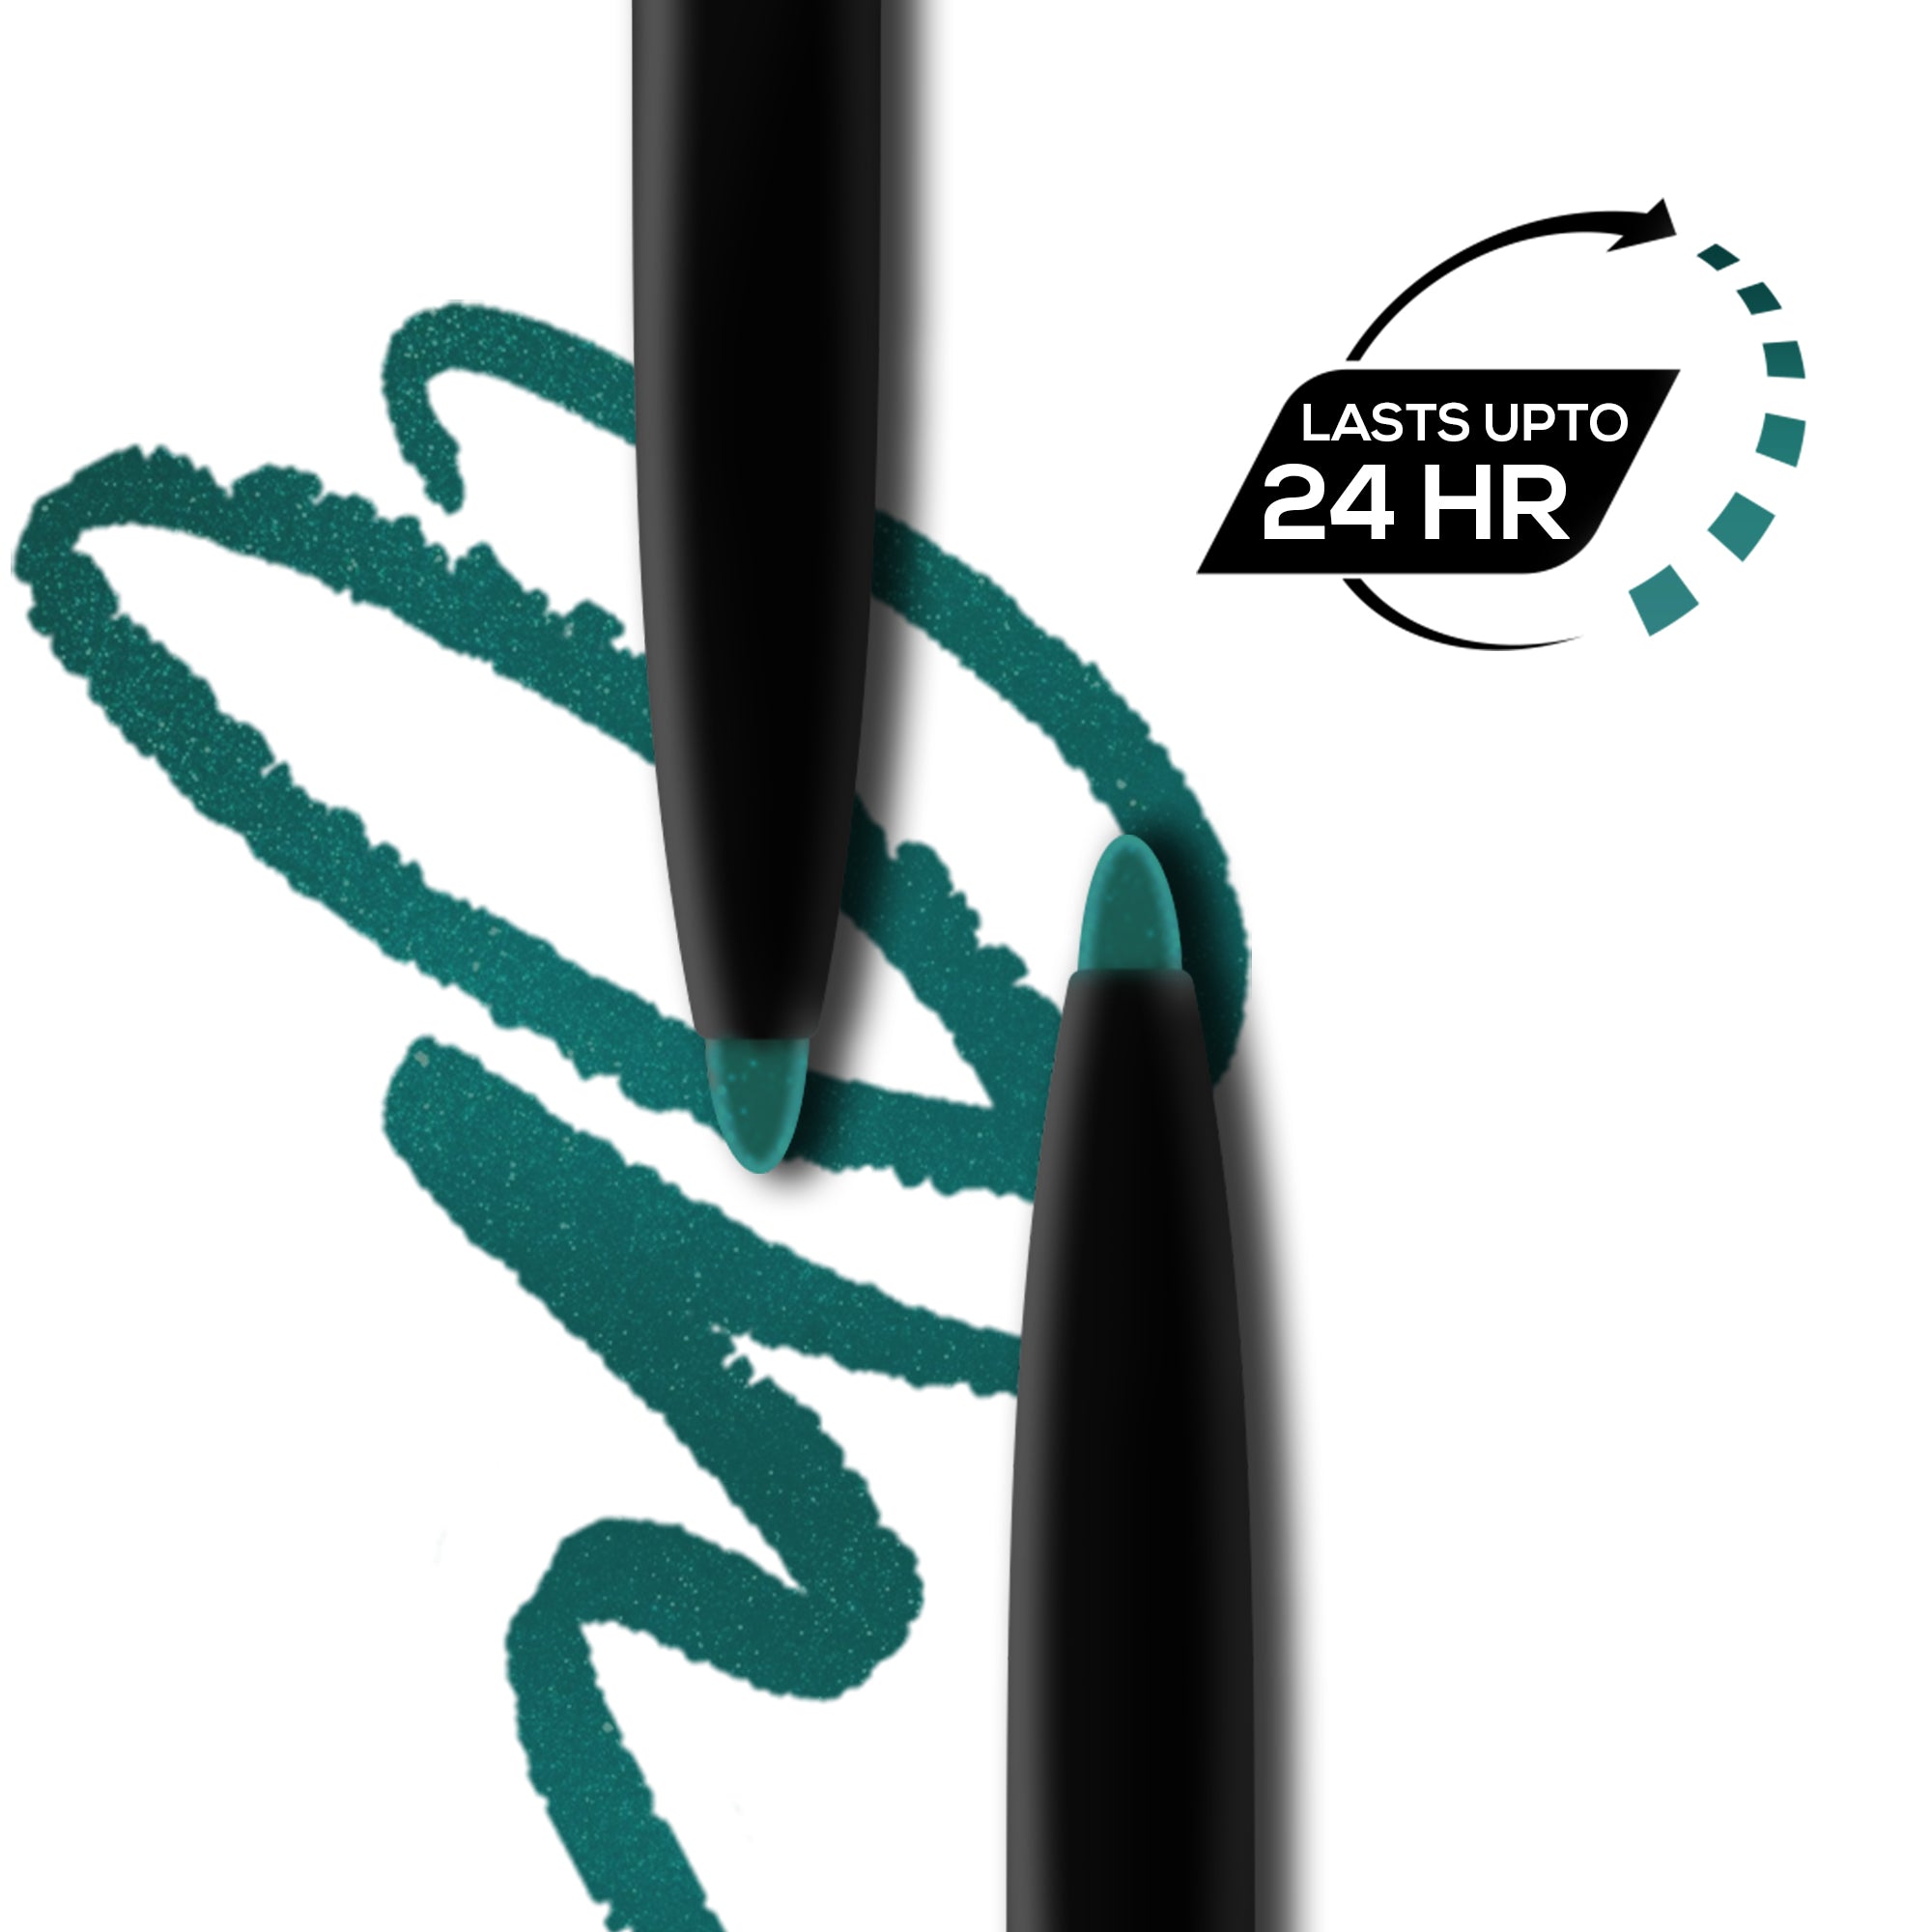 RENEE Bold Green Kajal Pen with Sharpener, 0.35gm